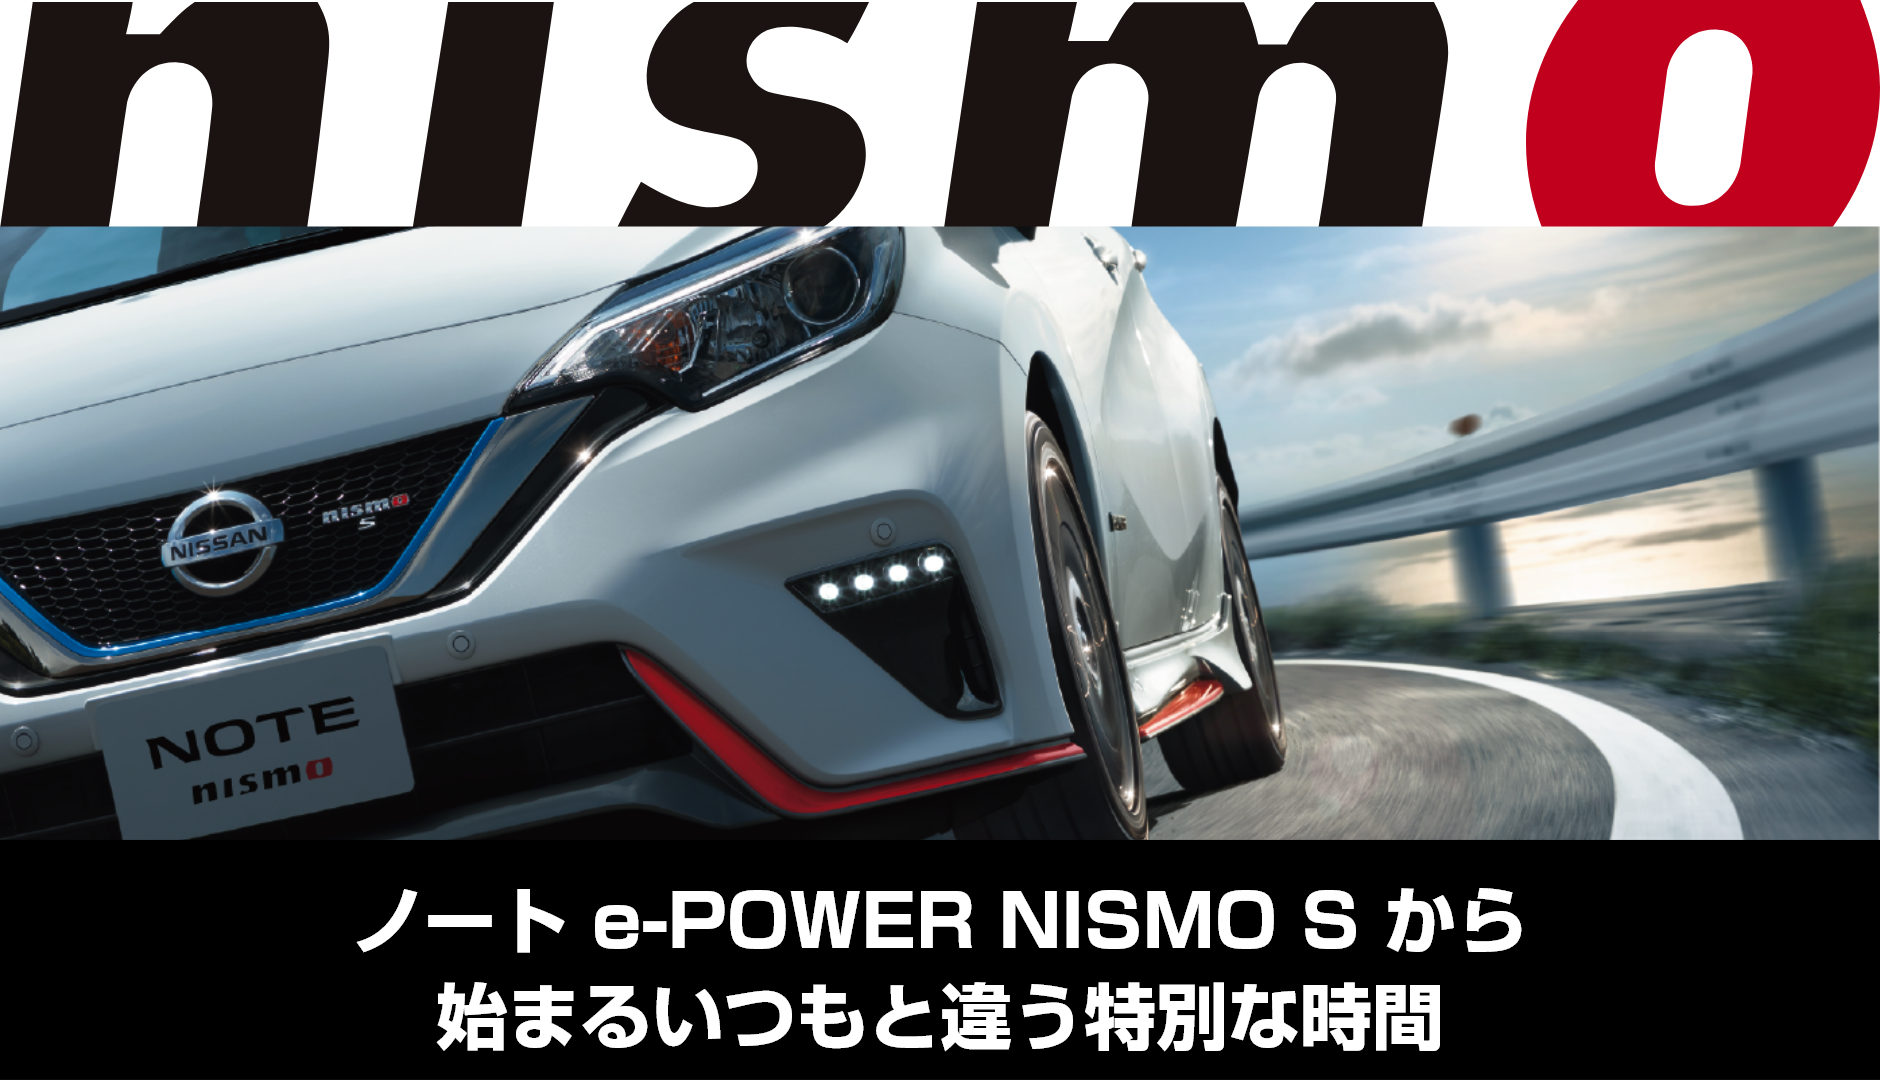 ノート E Power Nismo S 体感プラン お得なキャンペーン 日産レンタカー 公式